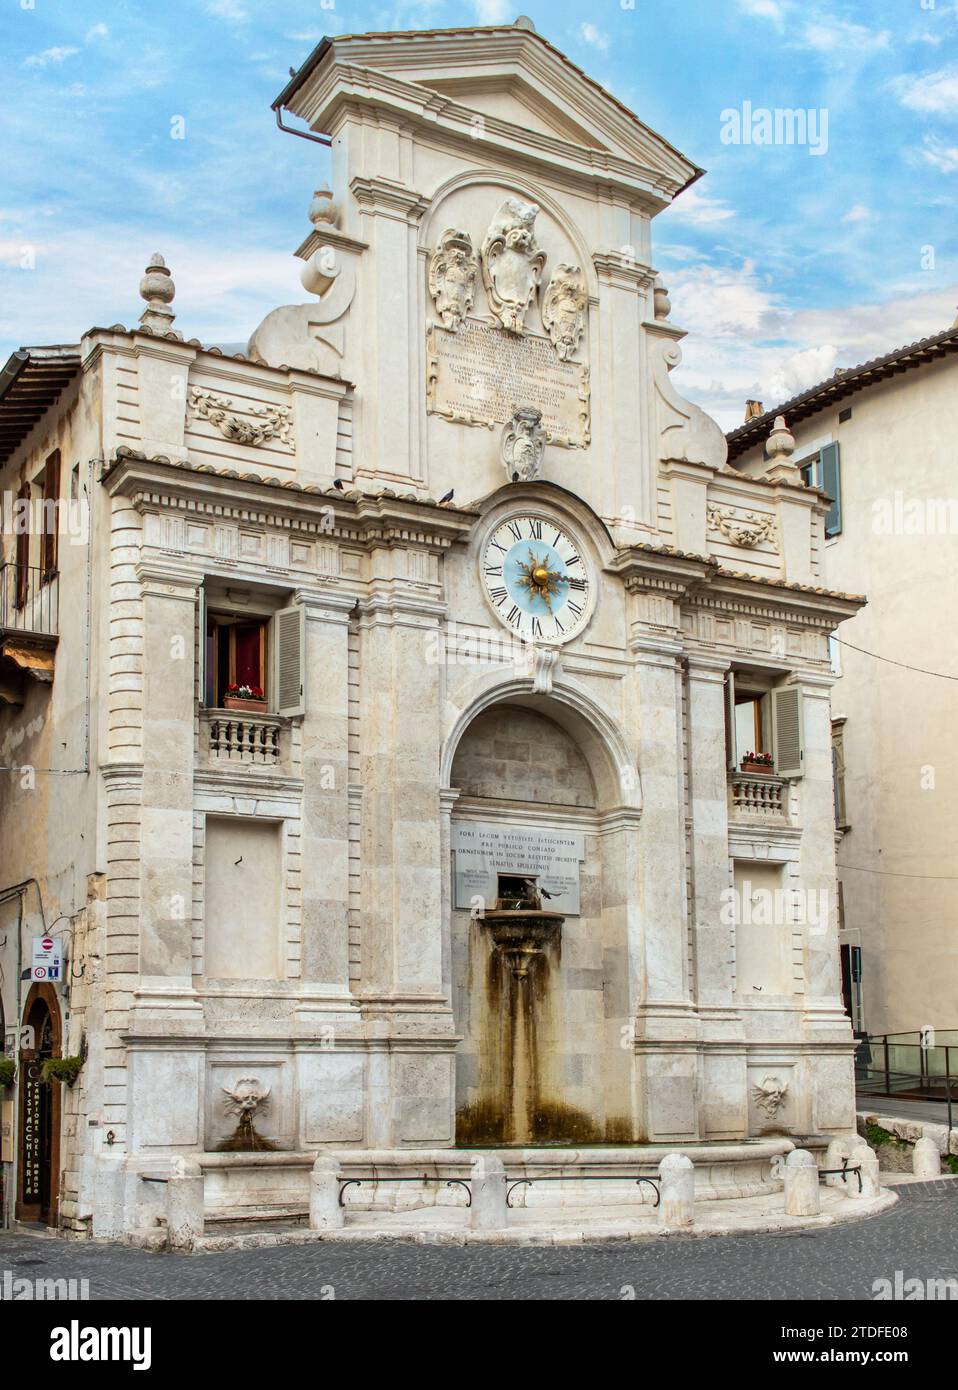 Spoleto, Italia - uno dei borghi più belli dell'Italia centrale, Spoleto mostra un meraviglioso centro storico, con stradine e vicoli stretti Foto Stock